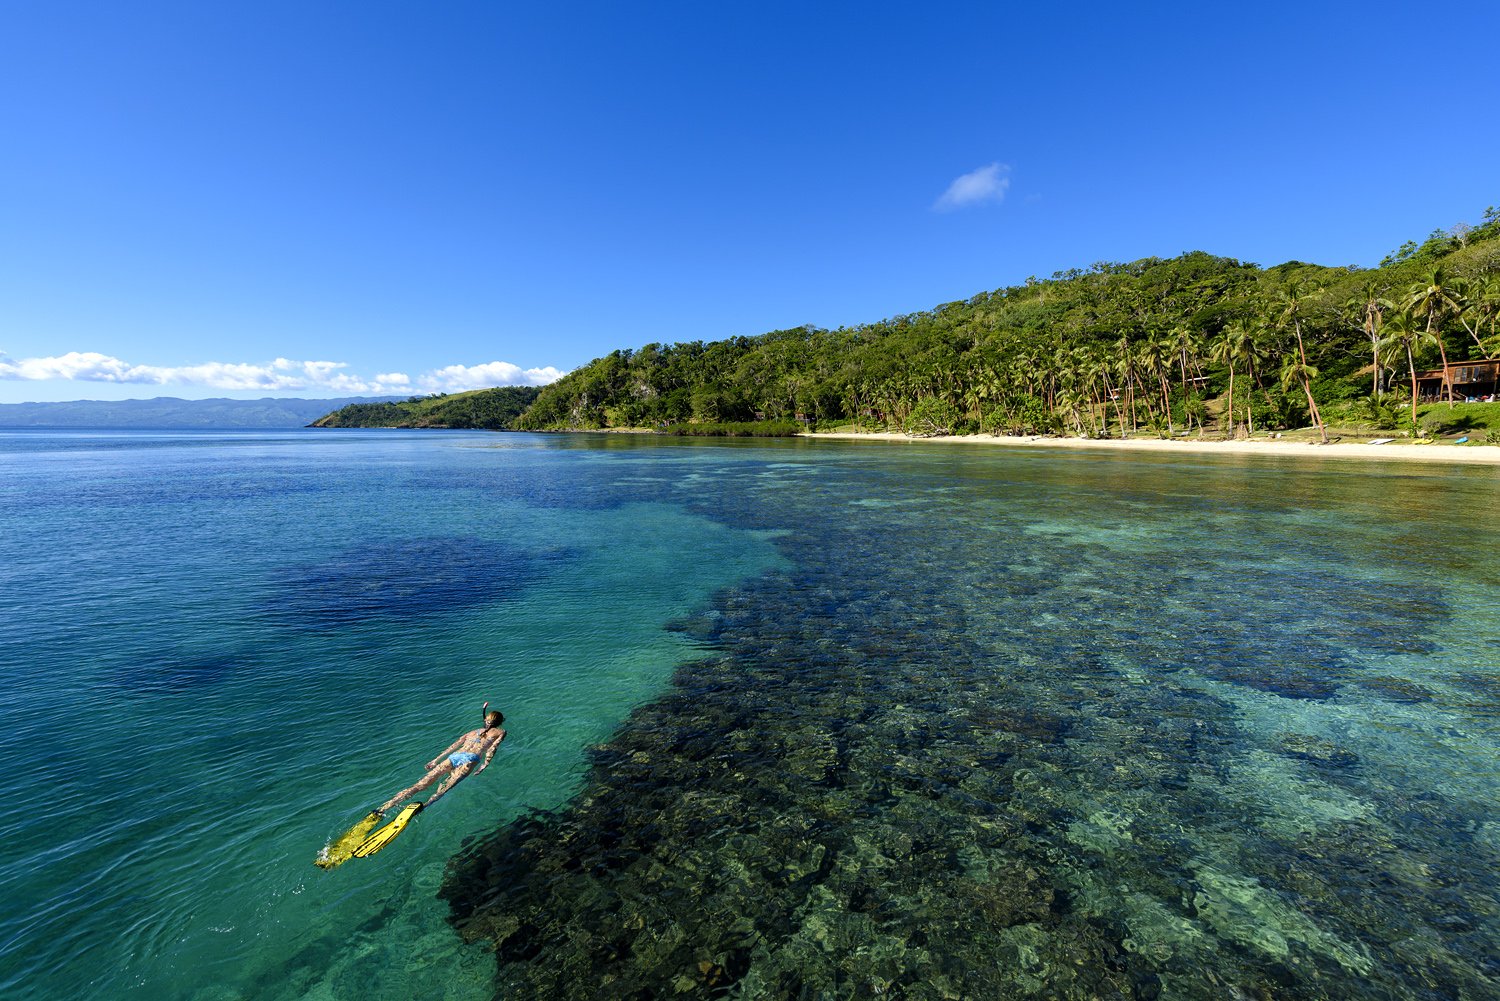 Remote+Resort+Fiji+Islands+House+Reef+Snorkeling.jpg